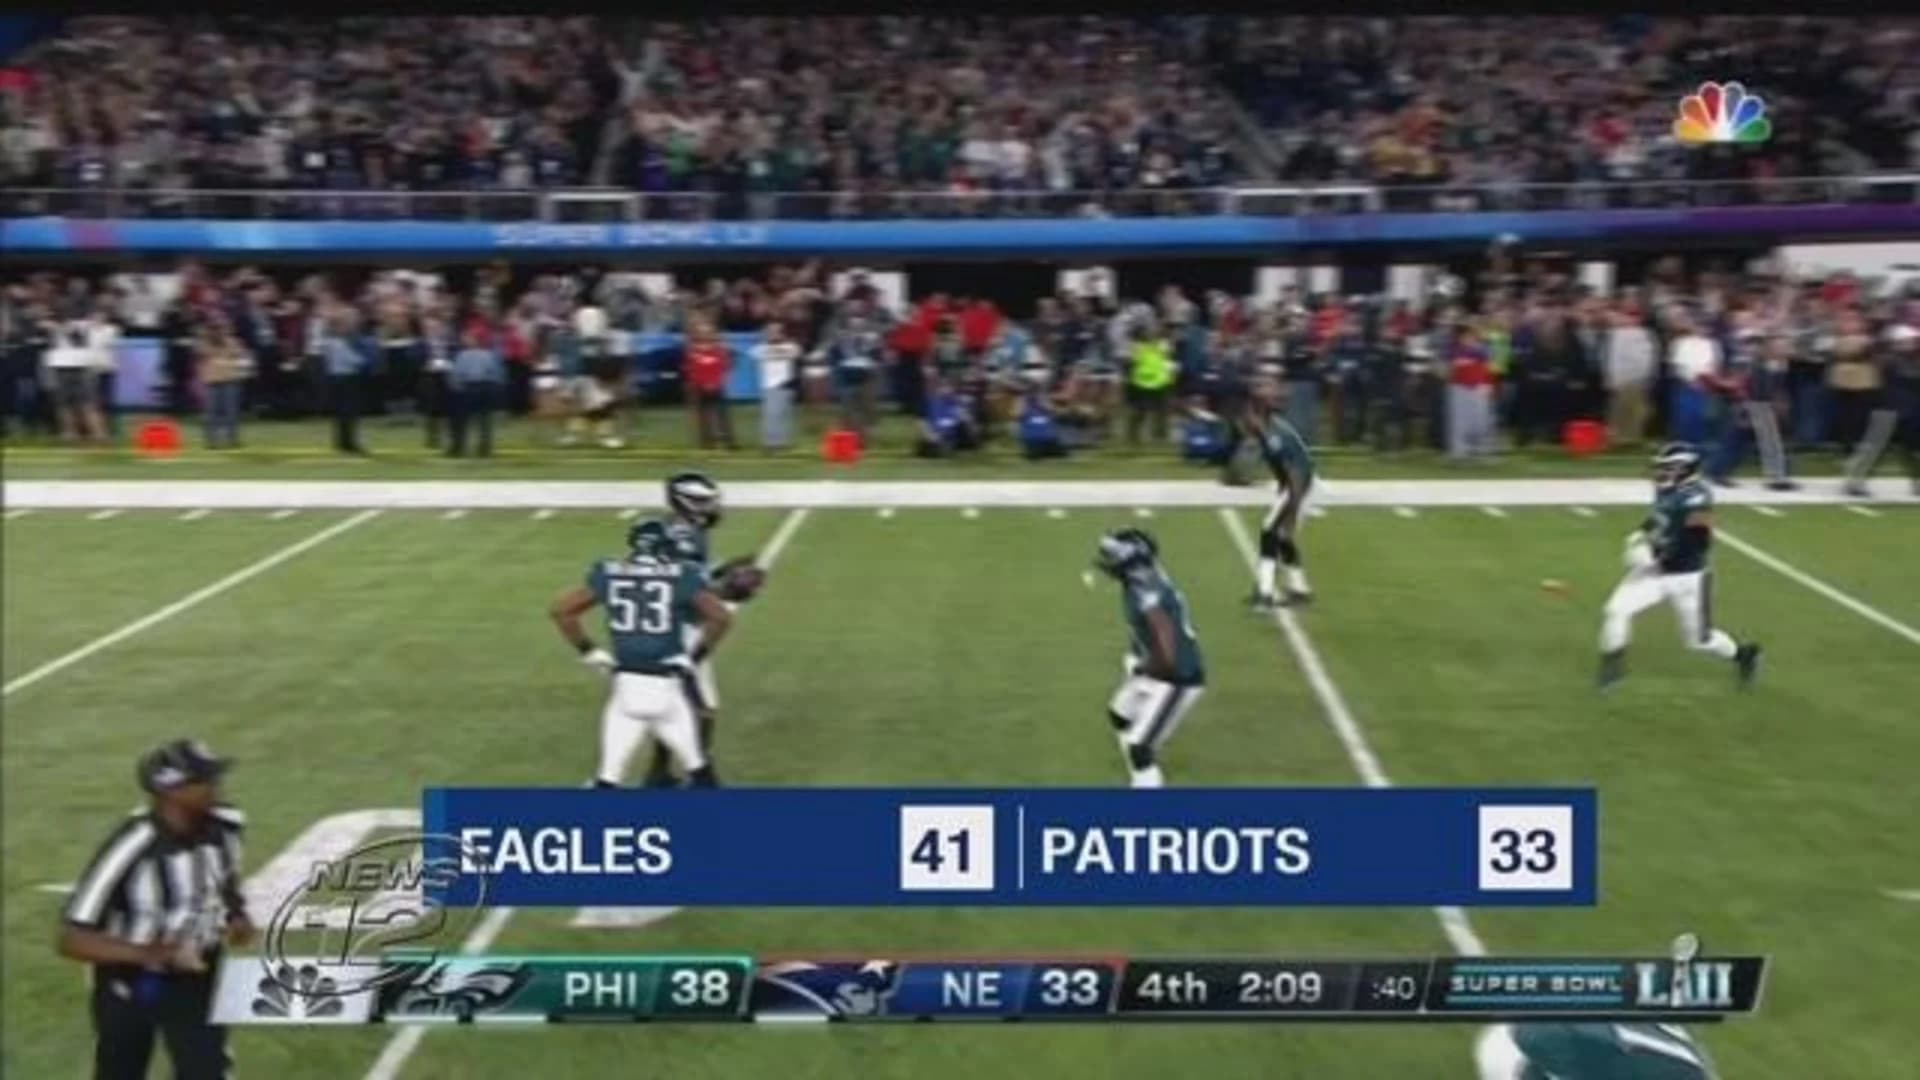 Foles, Eagles outshoot Patriots for 1st Super Bowl, 41-33